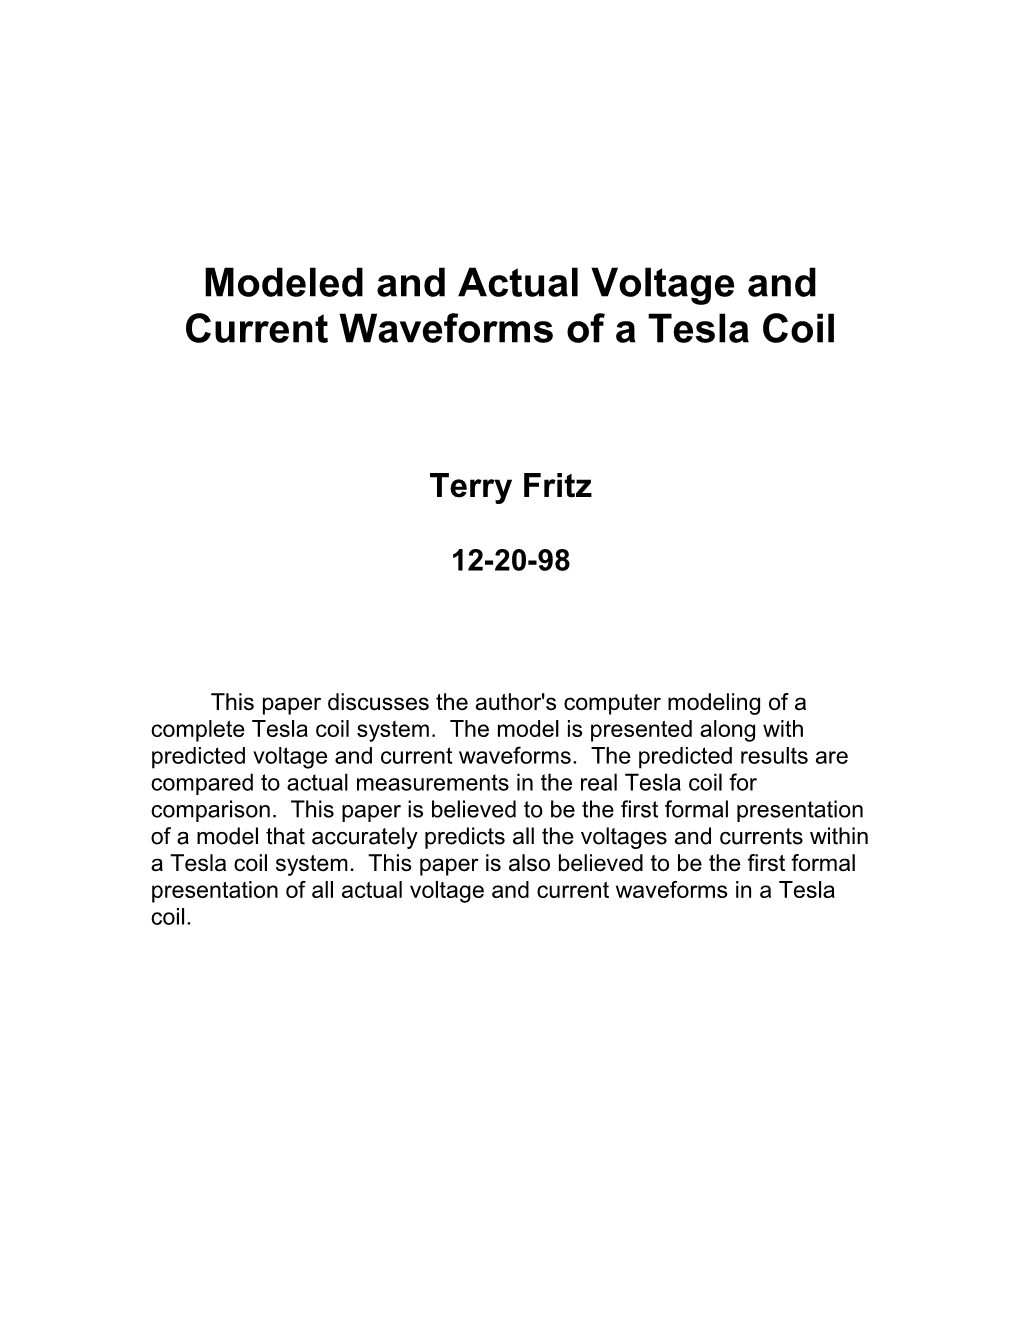 Modeling of Tesla Coils